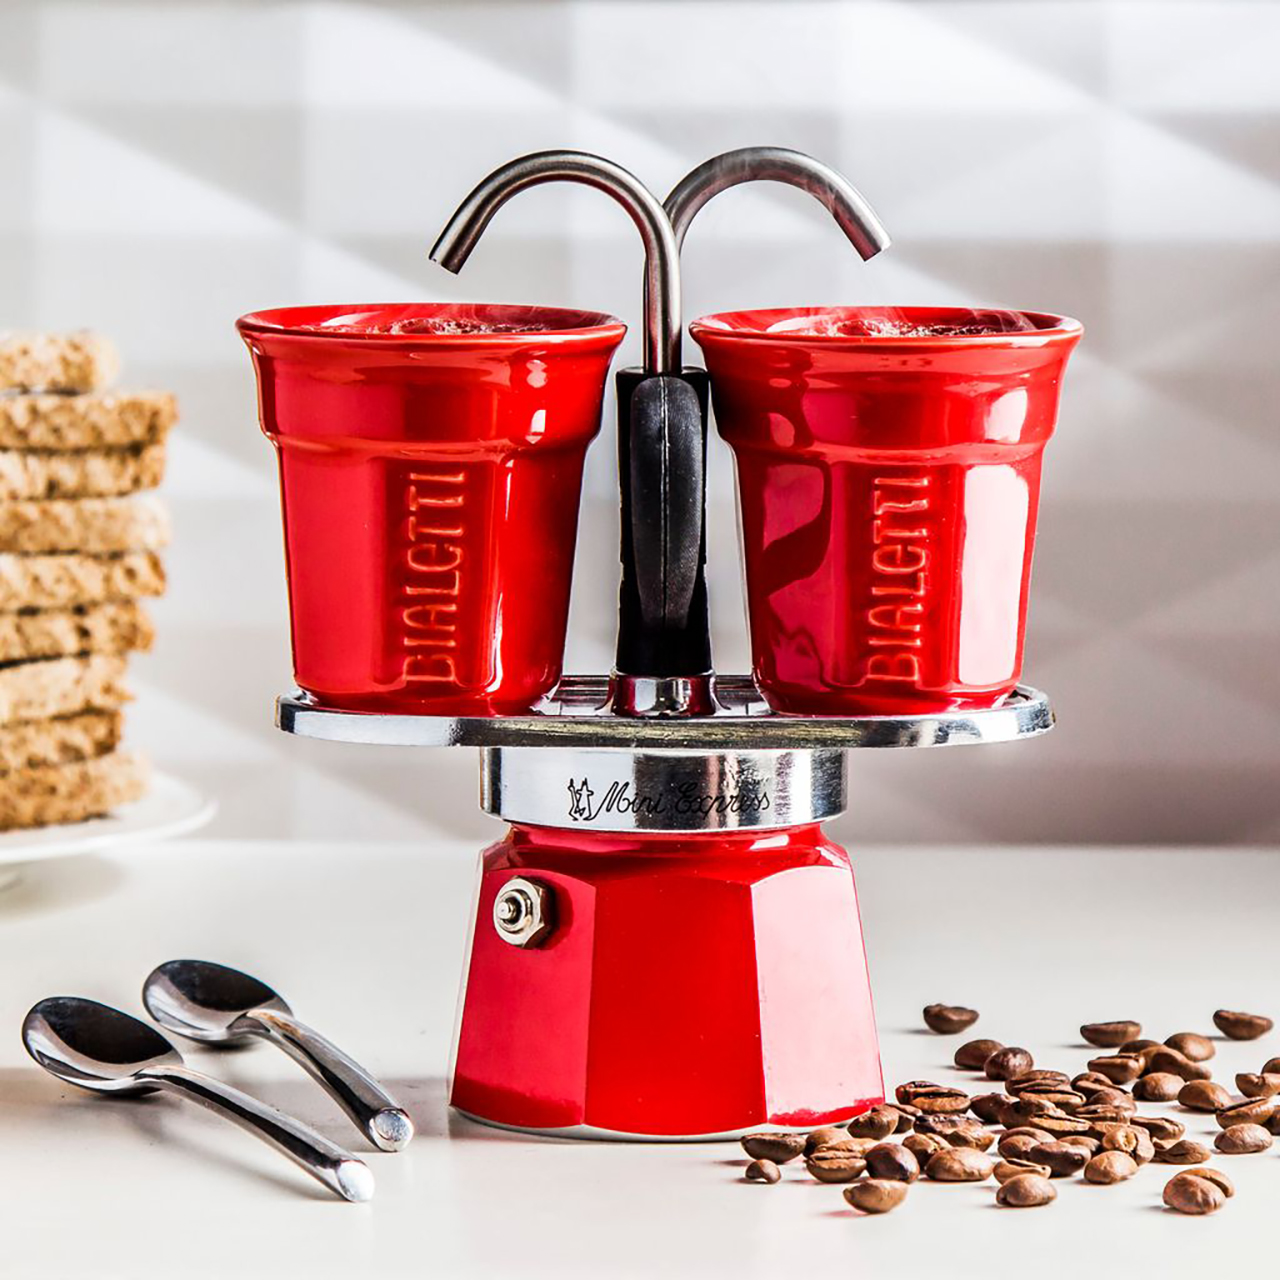 Bialetti Mini Express ltd edition red coloured 2 cup espresso